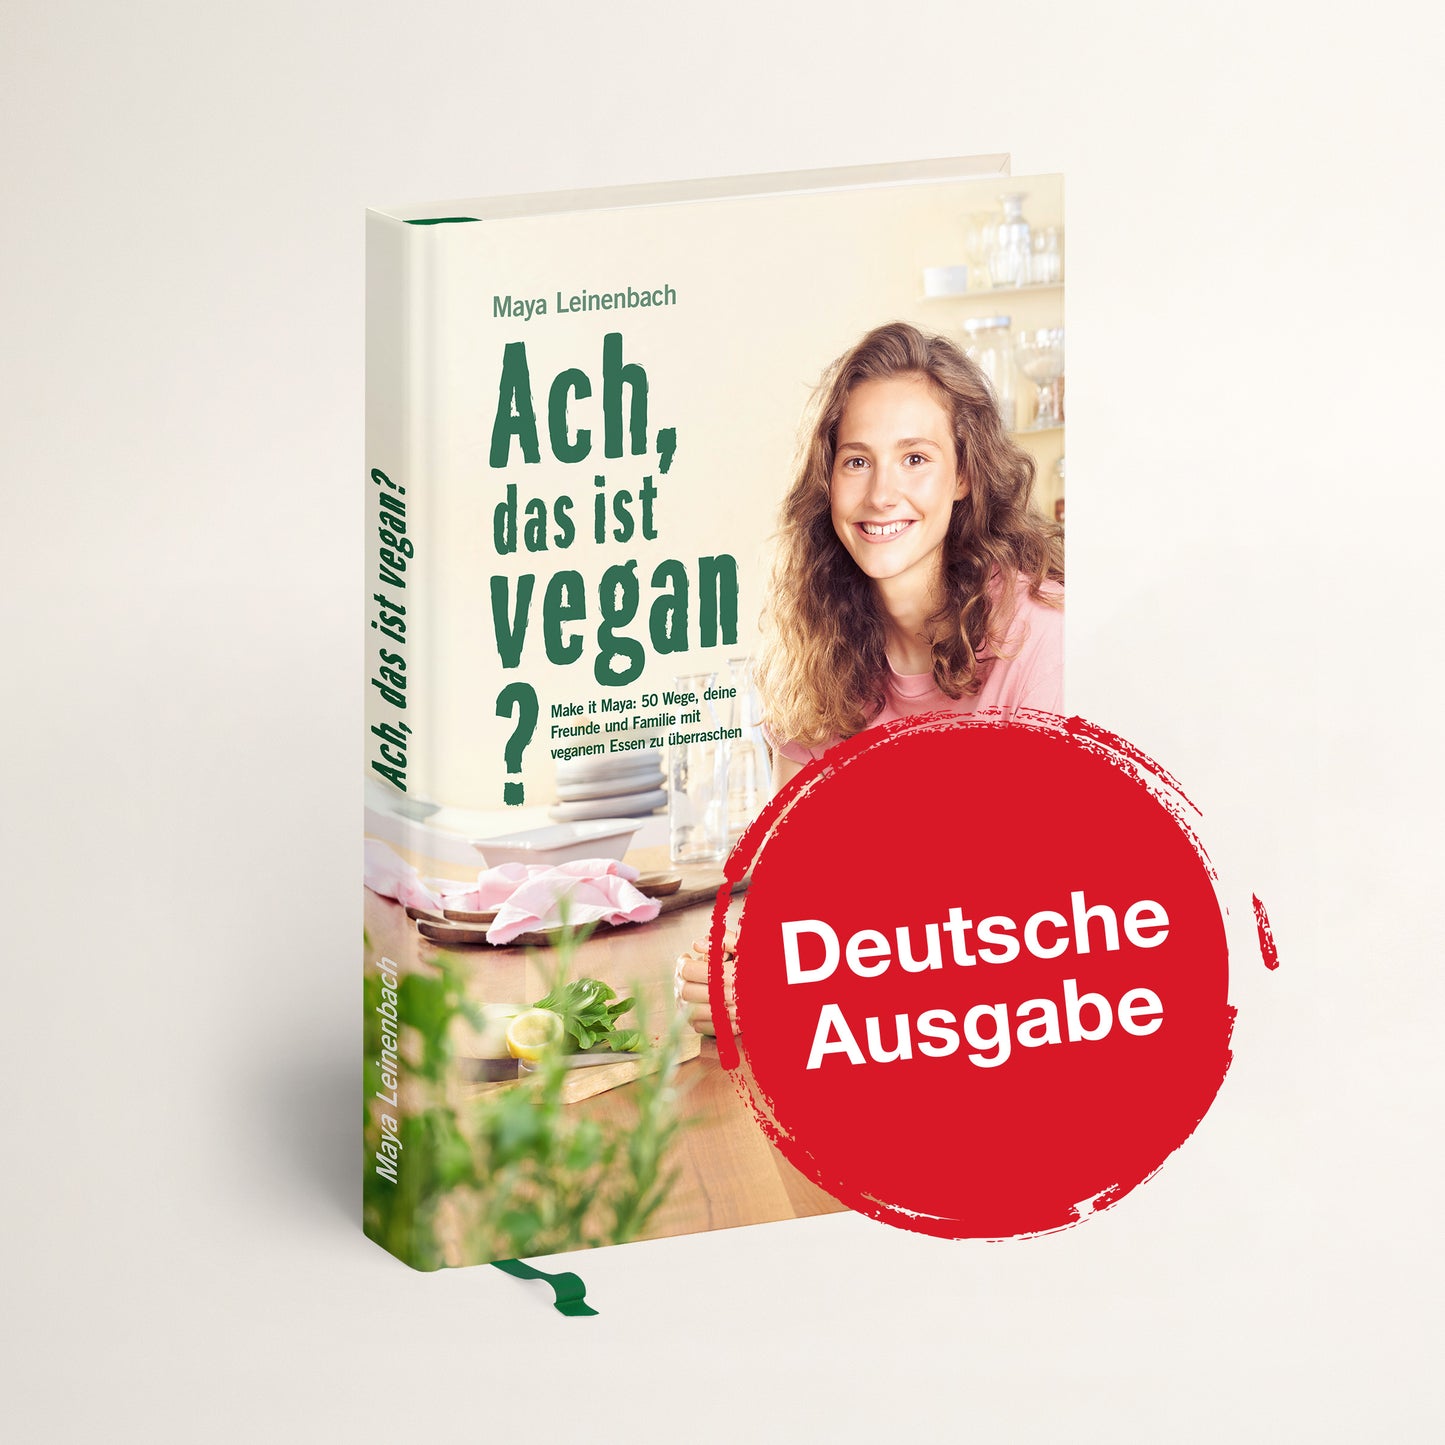 Deutsche Ausgabe Kochbuch Maya Leinenbach vegane Rezepte im t5c.shop